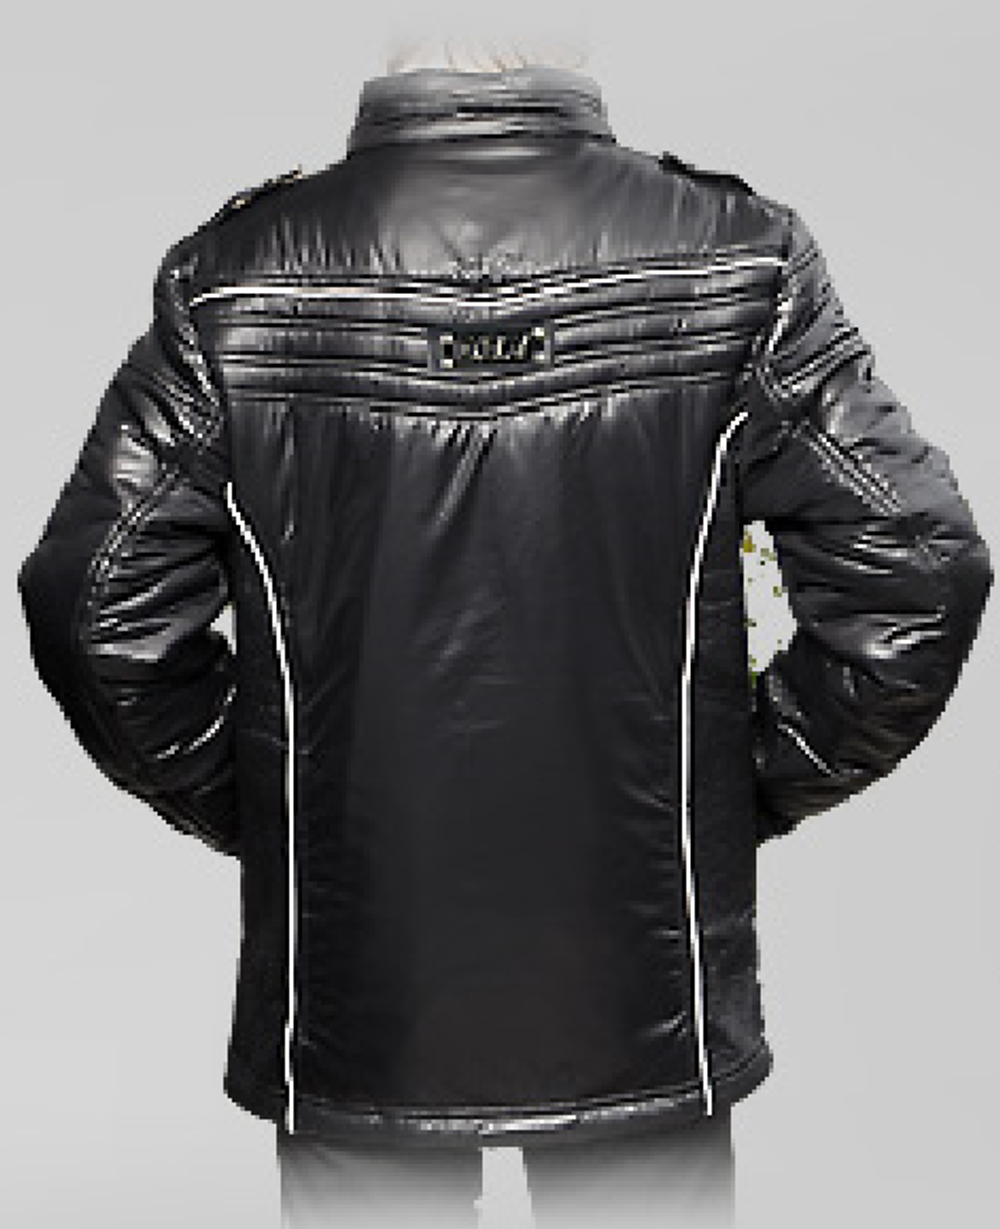 DAY Куртка для мальчика весна/осень S3001 черная